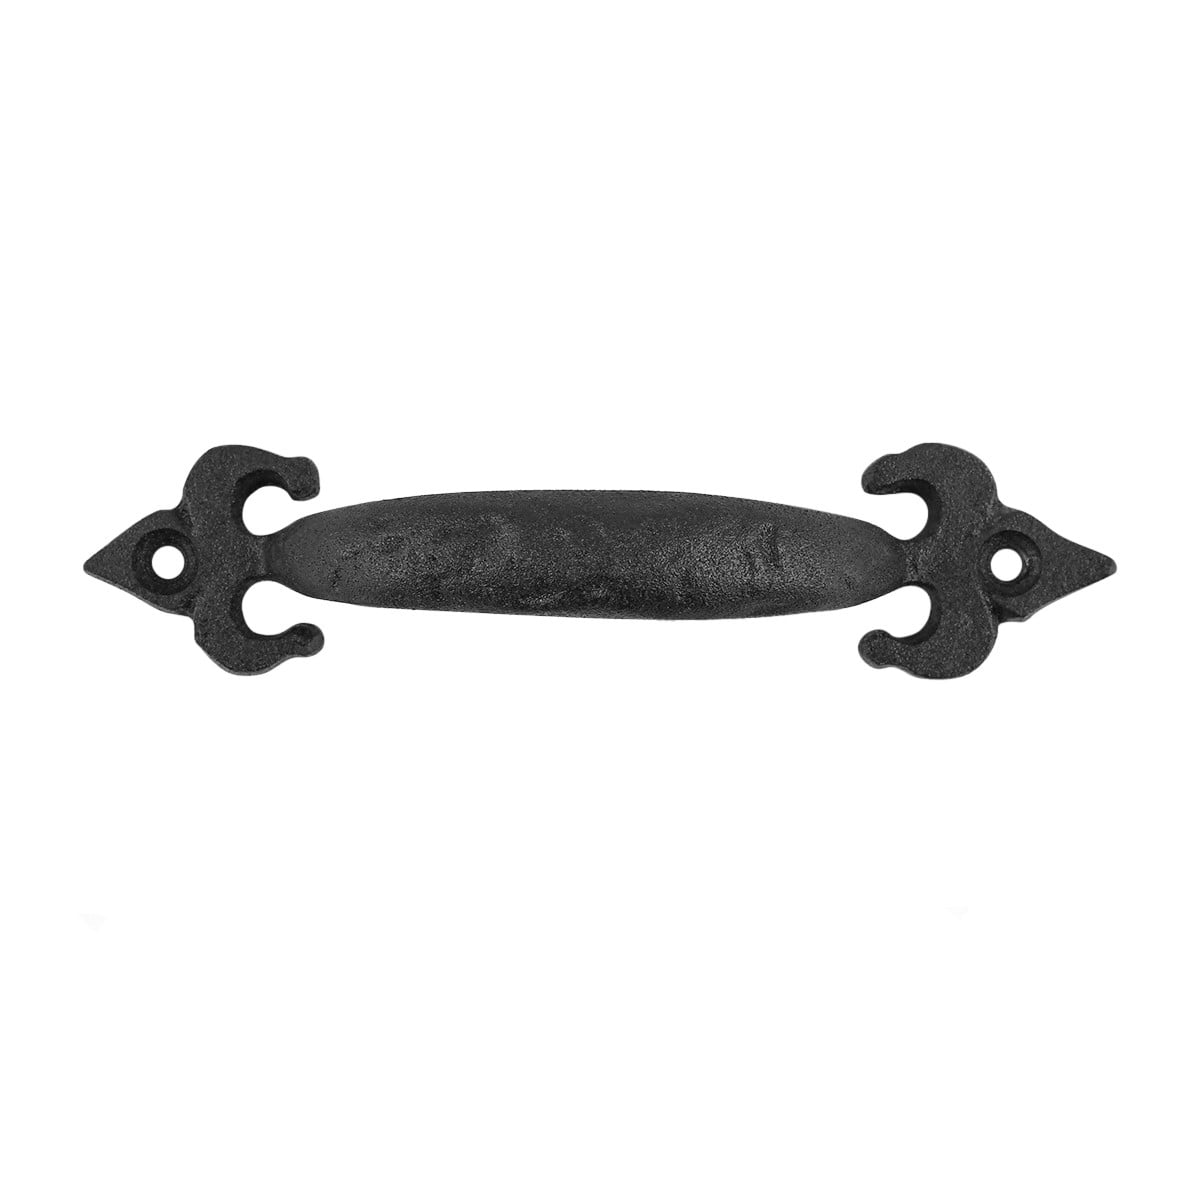 11 1/2 inch cast iron fleur de lis gate handle pull black 